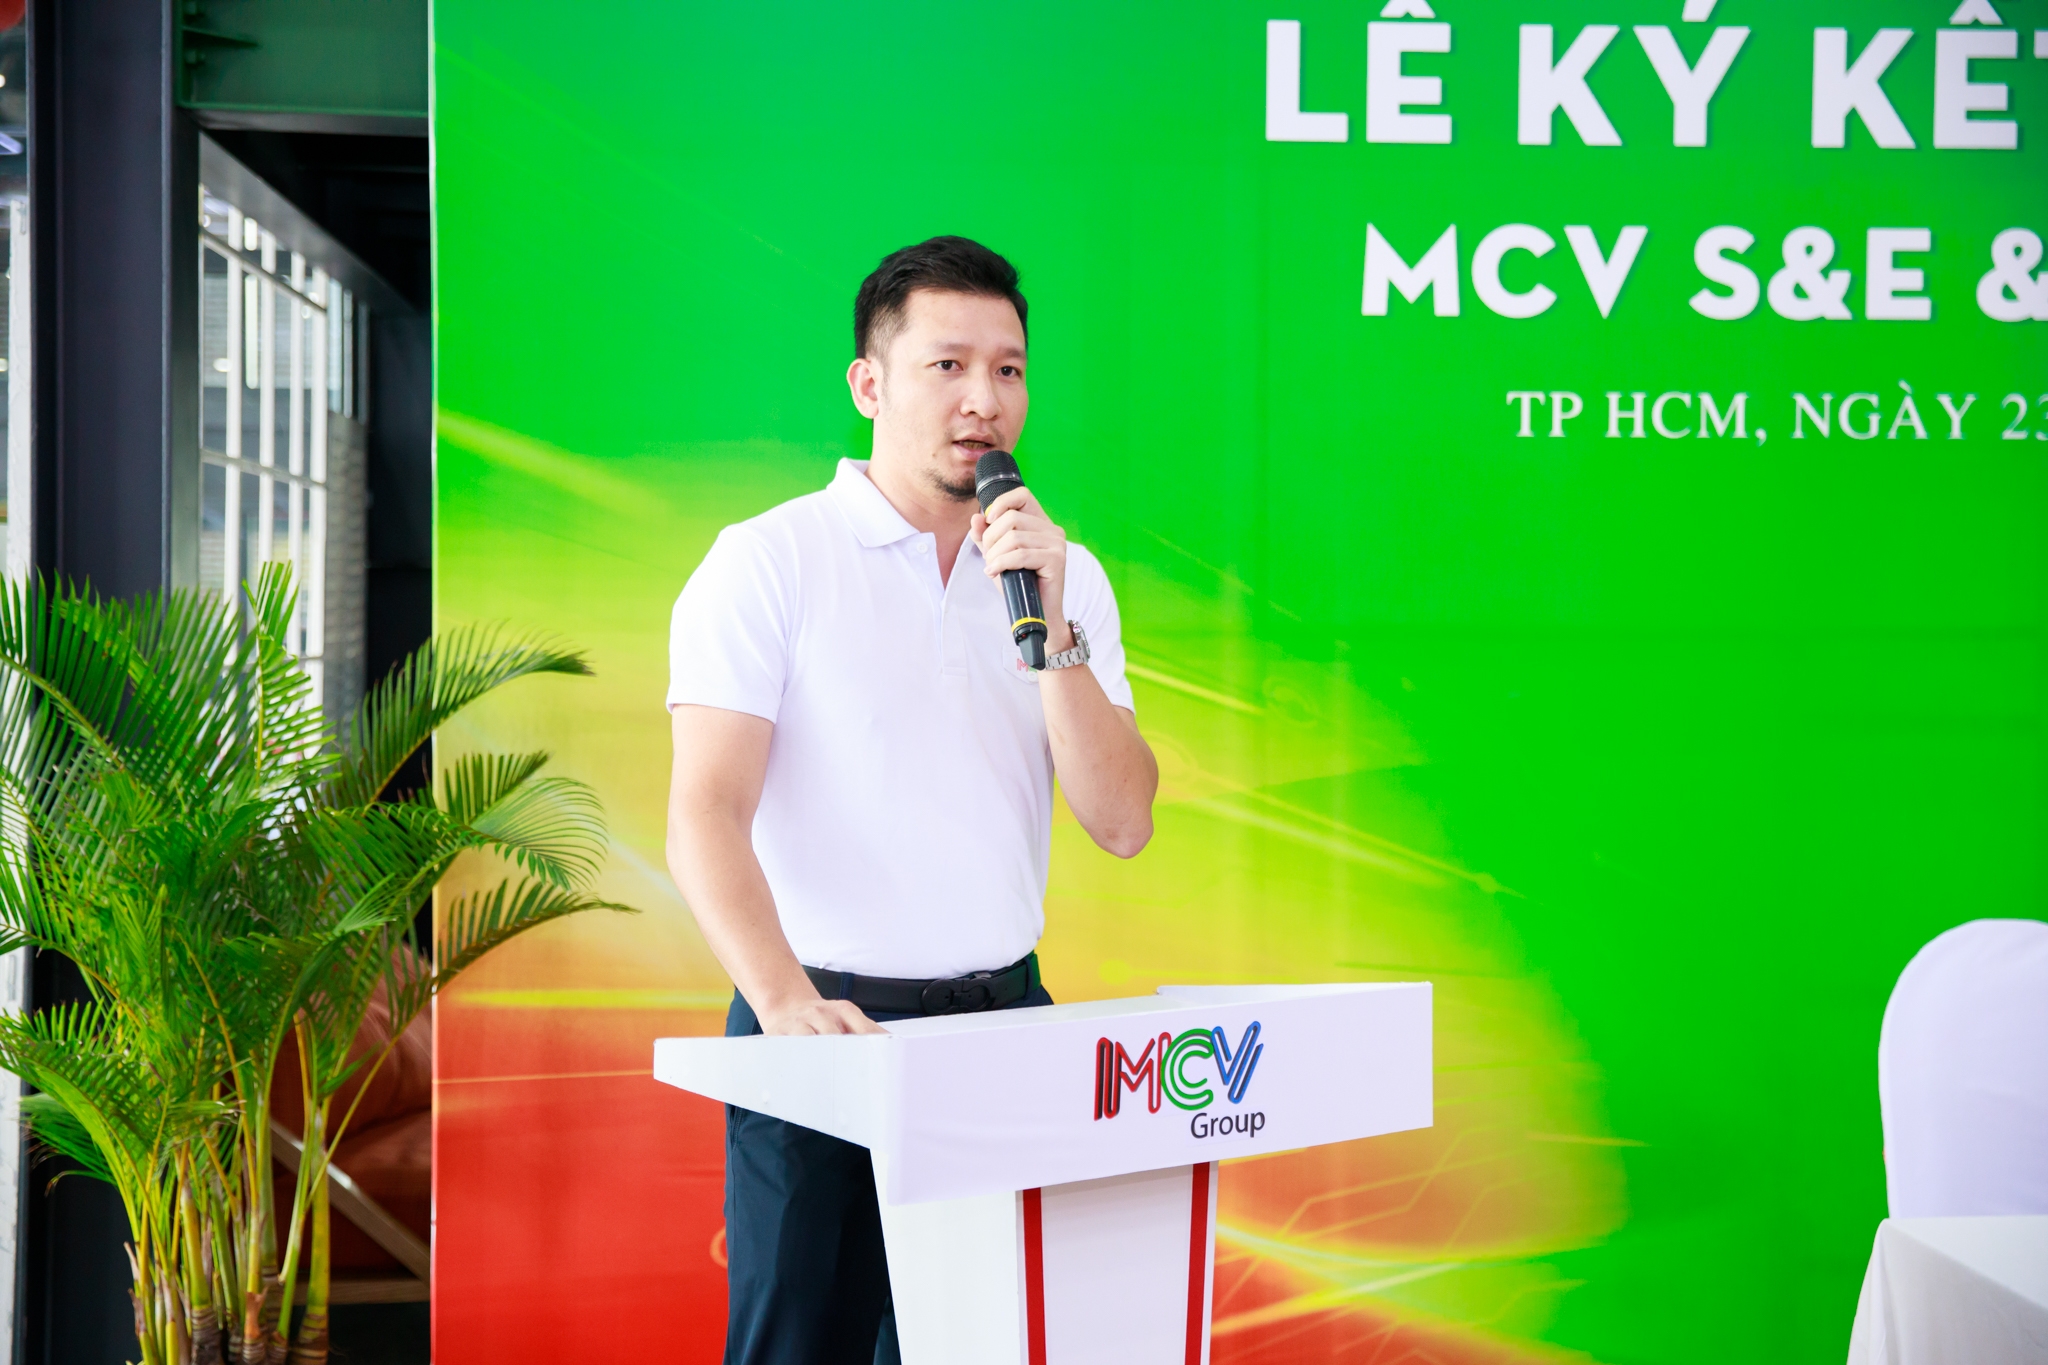 MCV S&E bắt tay Green Hat hứa hẹn đột phá trong lĩnh vực sự kiện - truyền thông